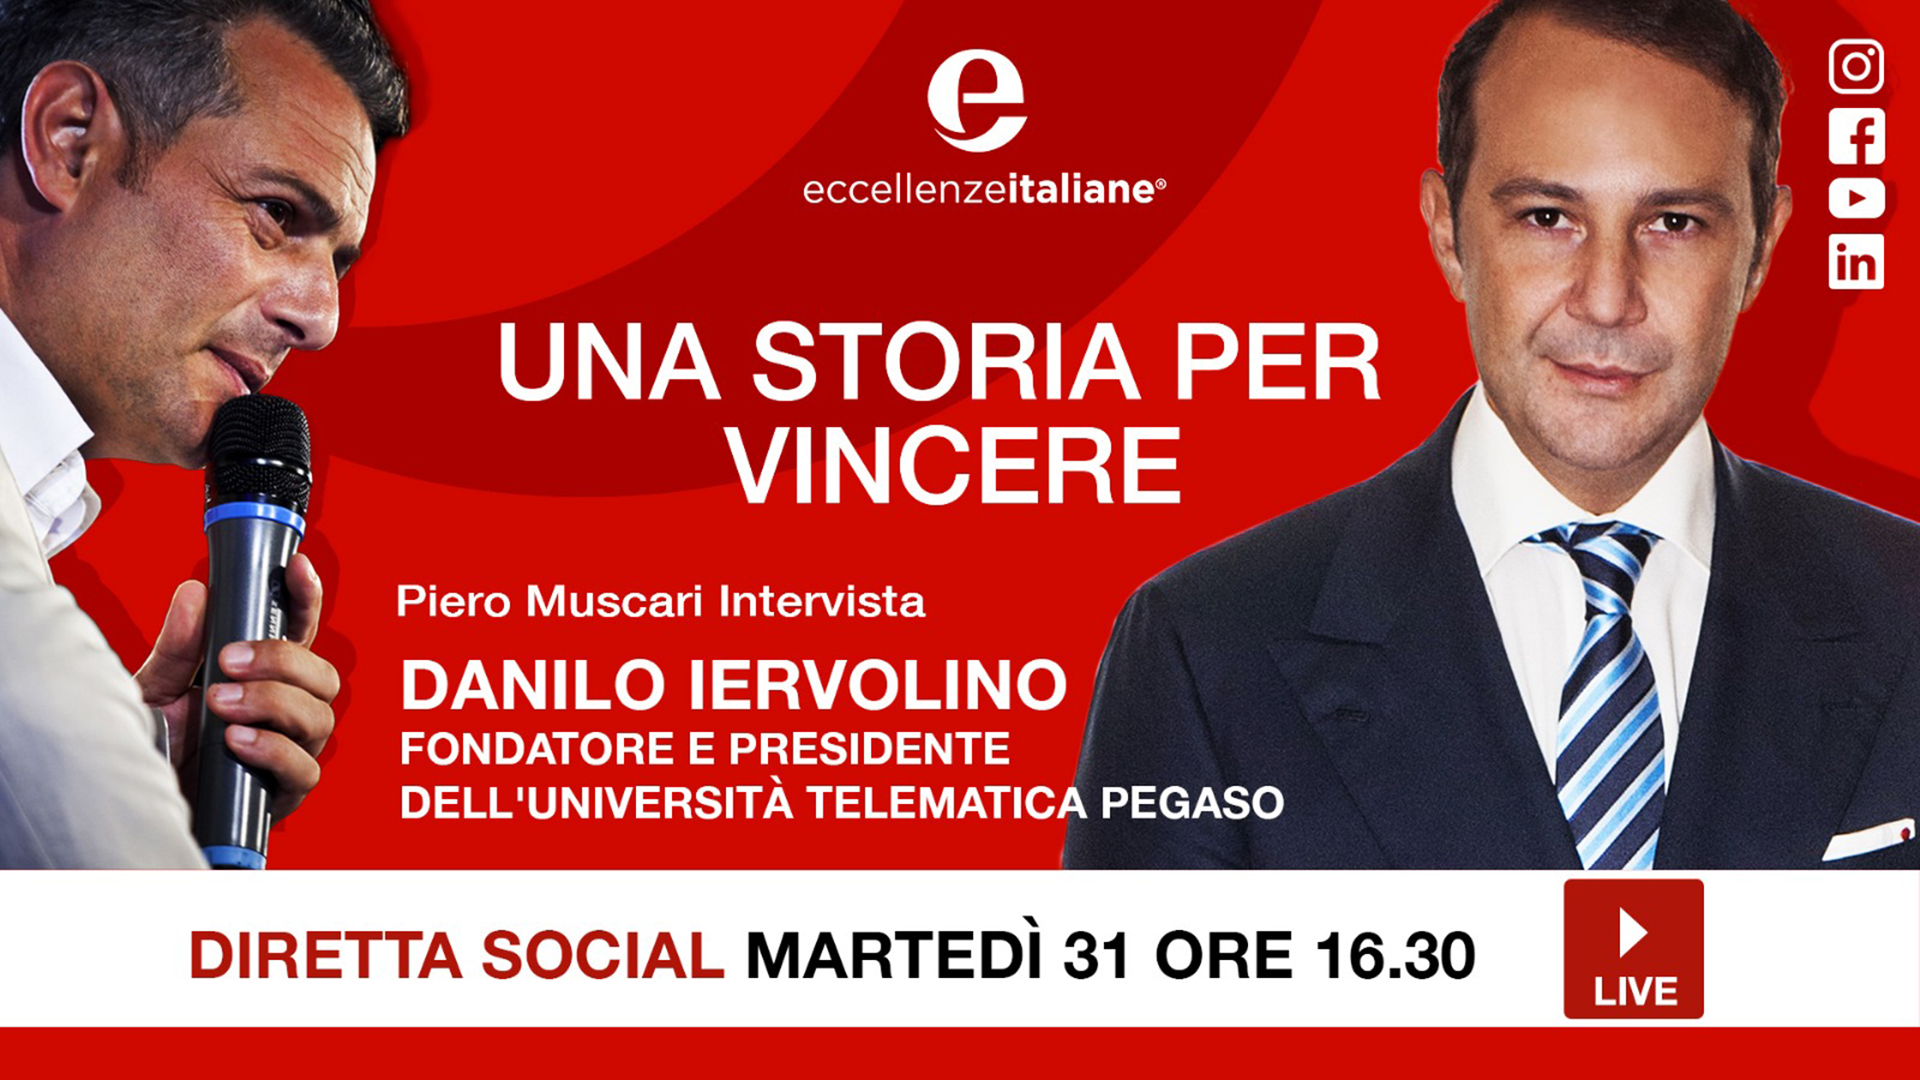 danilo iervolino live - Eccellenze Italiane TV